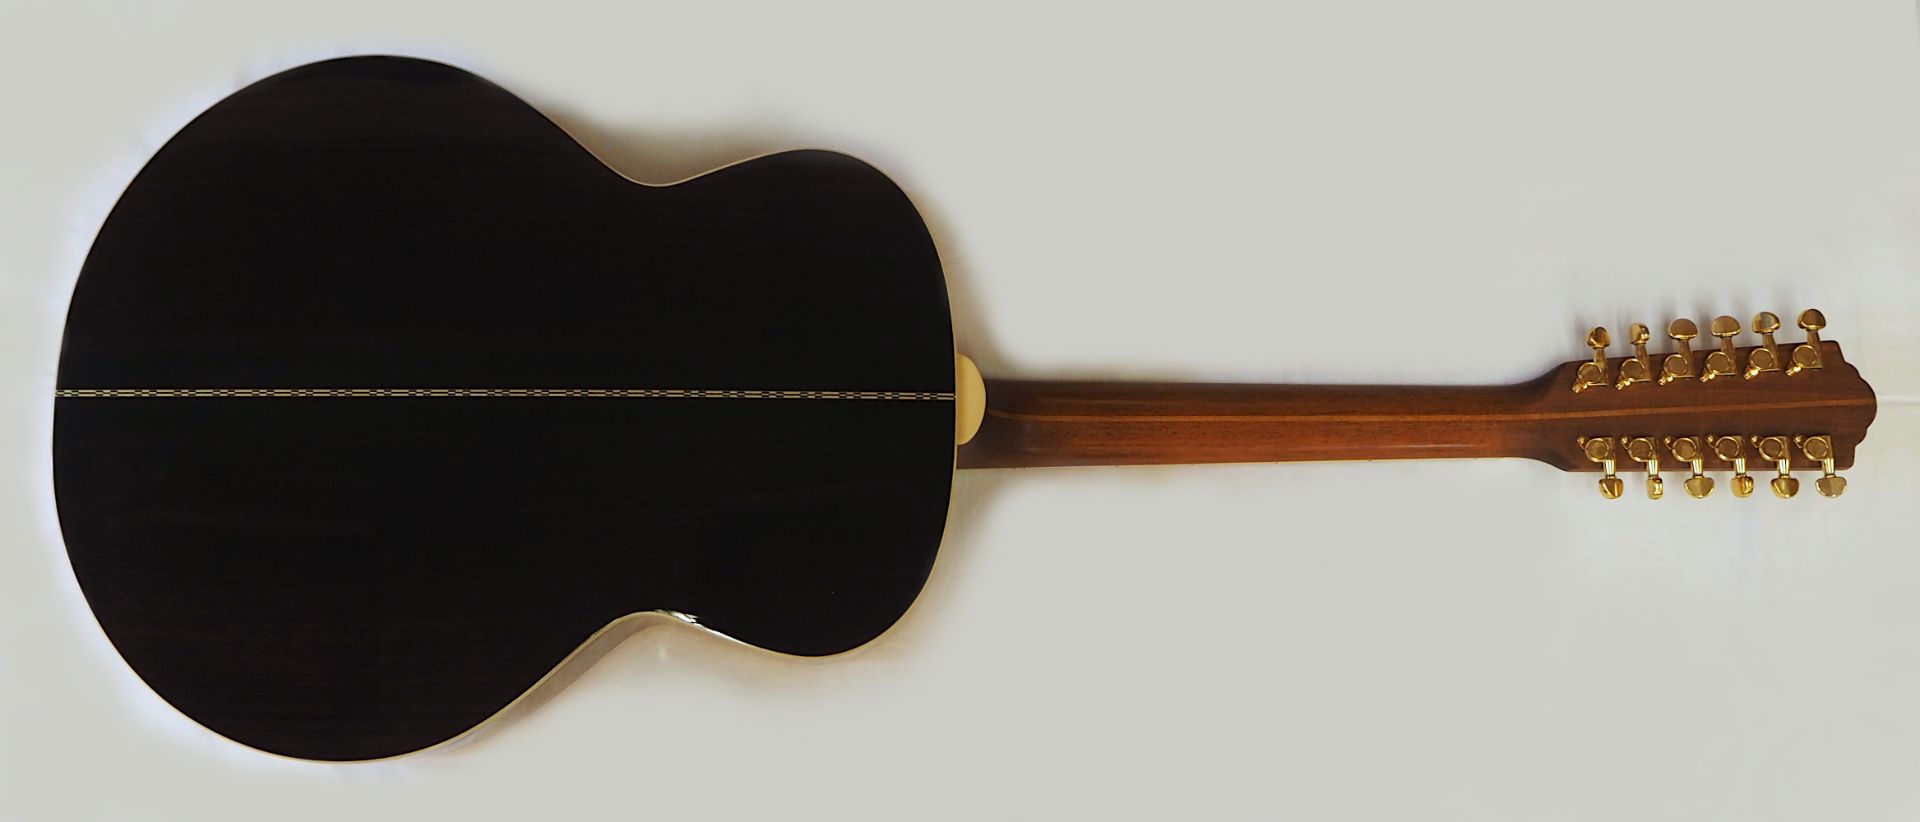 1 Akustik-Gitarre GUILD "F-1512NAT", China Seriennummer: GAD-54054, schwarz/braun, mit - Bild 4 aus 4